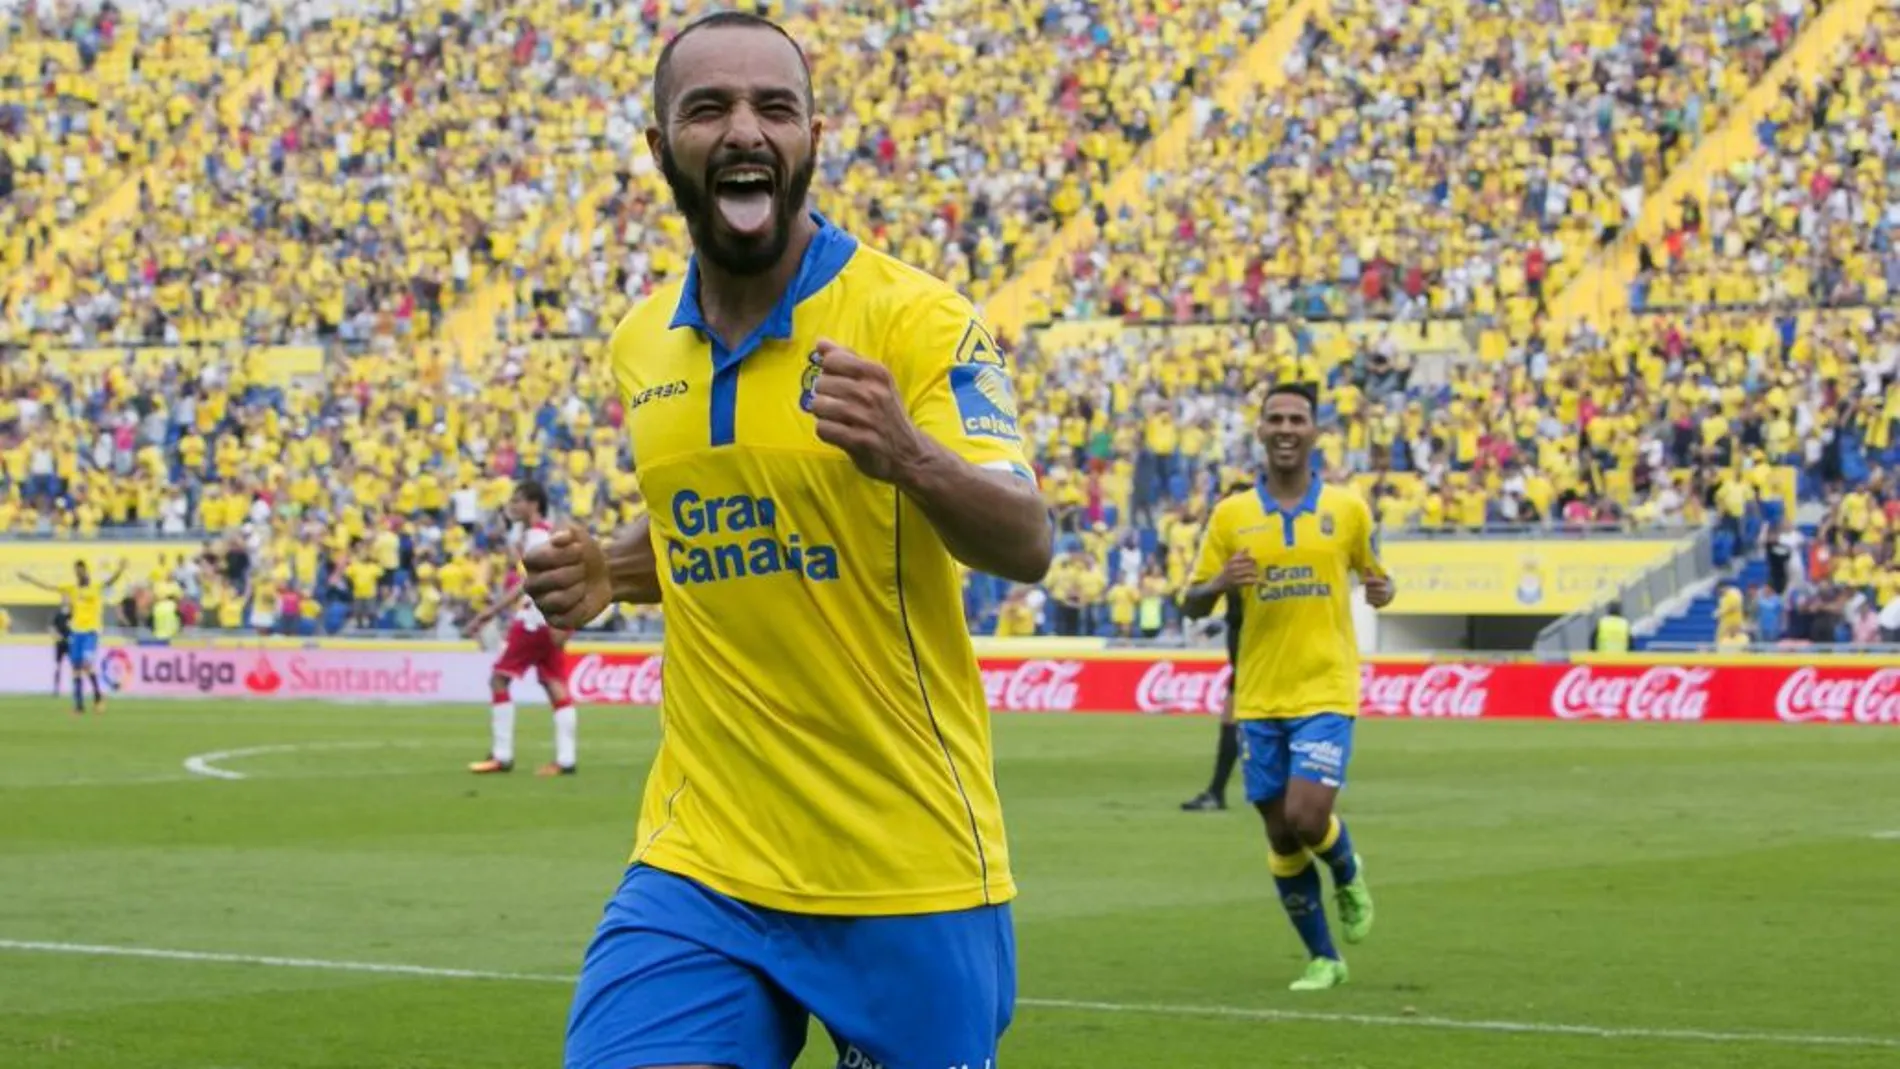 El centrocampista marroquí de la UD Las Palmas Nabil El Zhar celebra su segundo gol